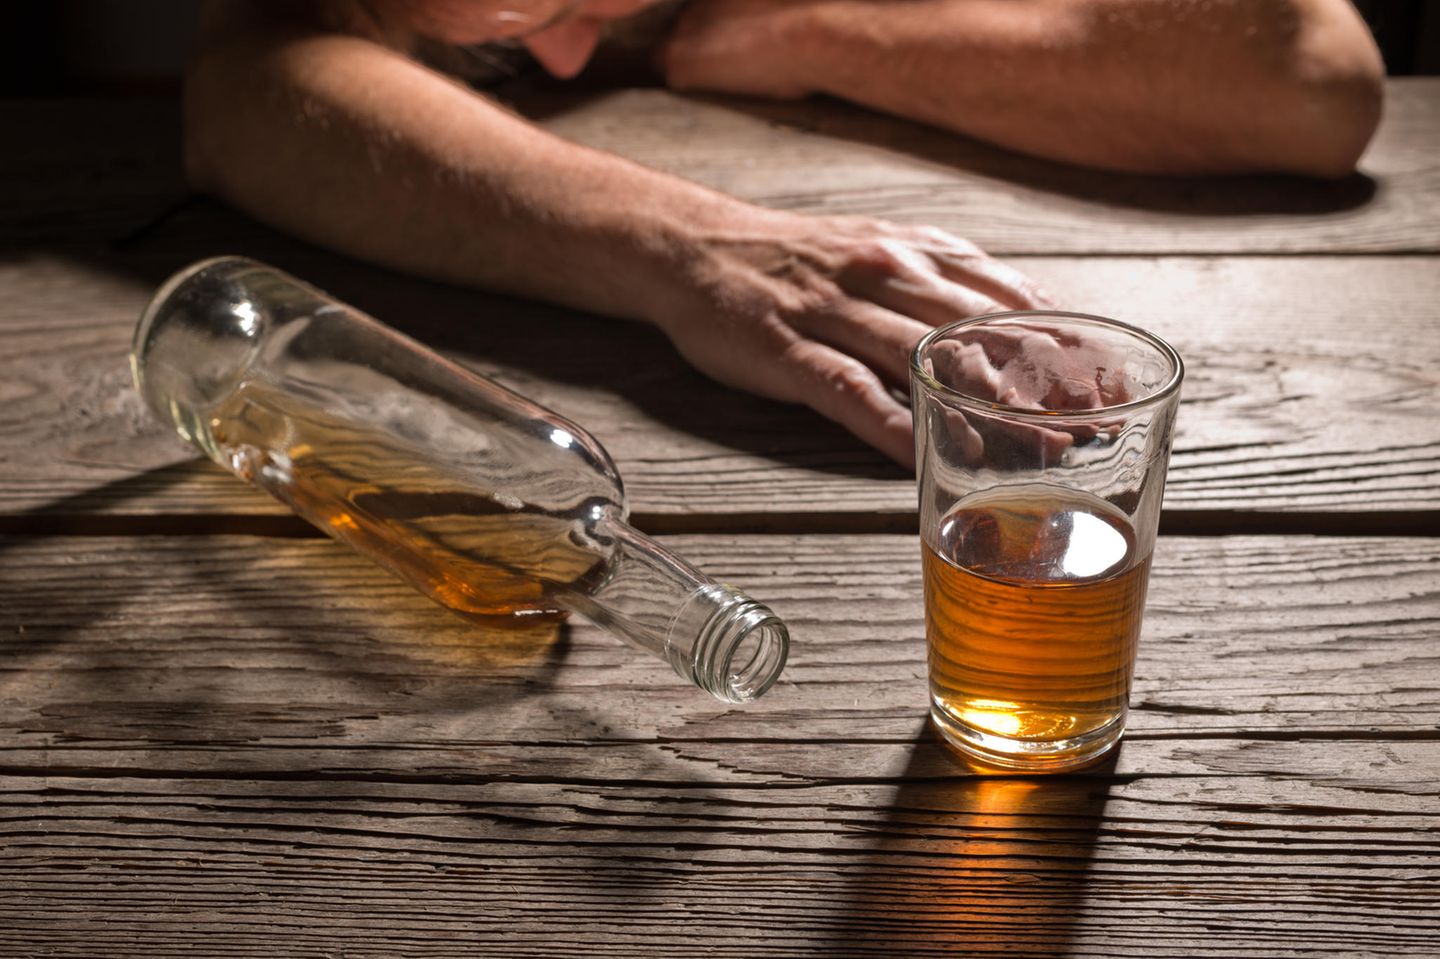 Brandyflasche und Glas vor betrunkenem Mann